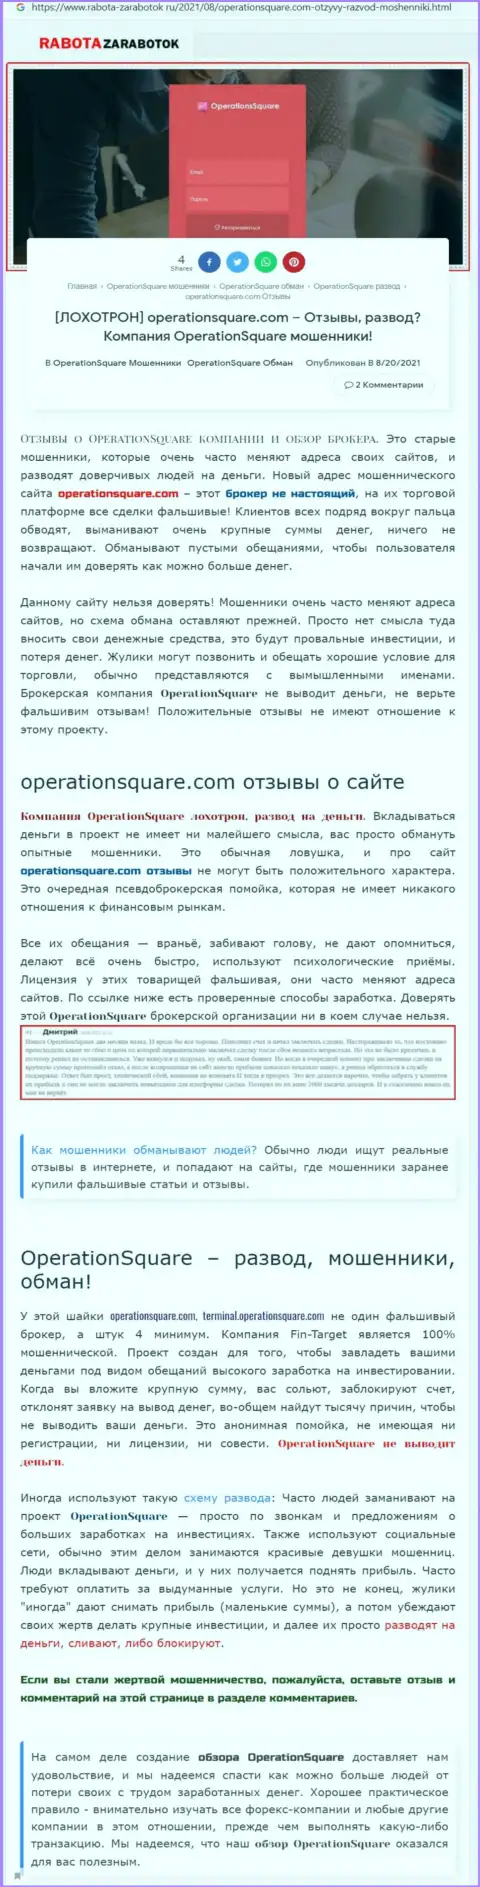 OperationSquare - это АФЕРИСТЫ !!! Приемы надувательства и отзывы жертв